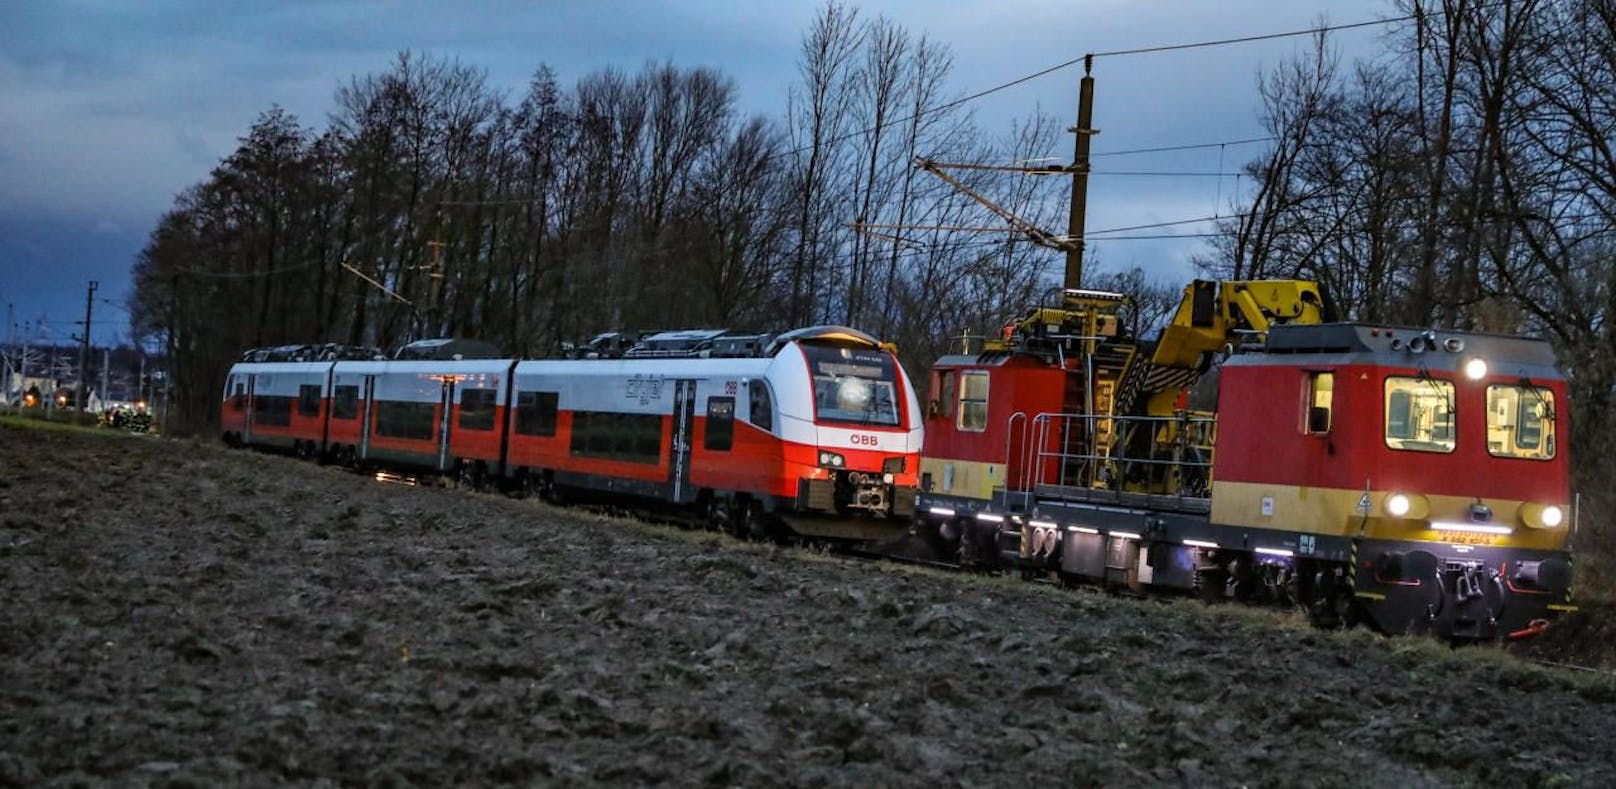 ÖBB-Zug nach Crash mit Baum evakuiert